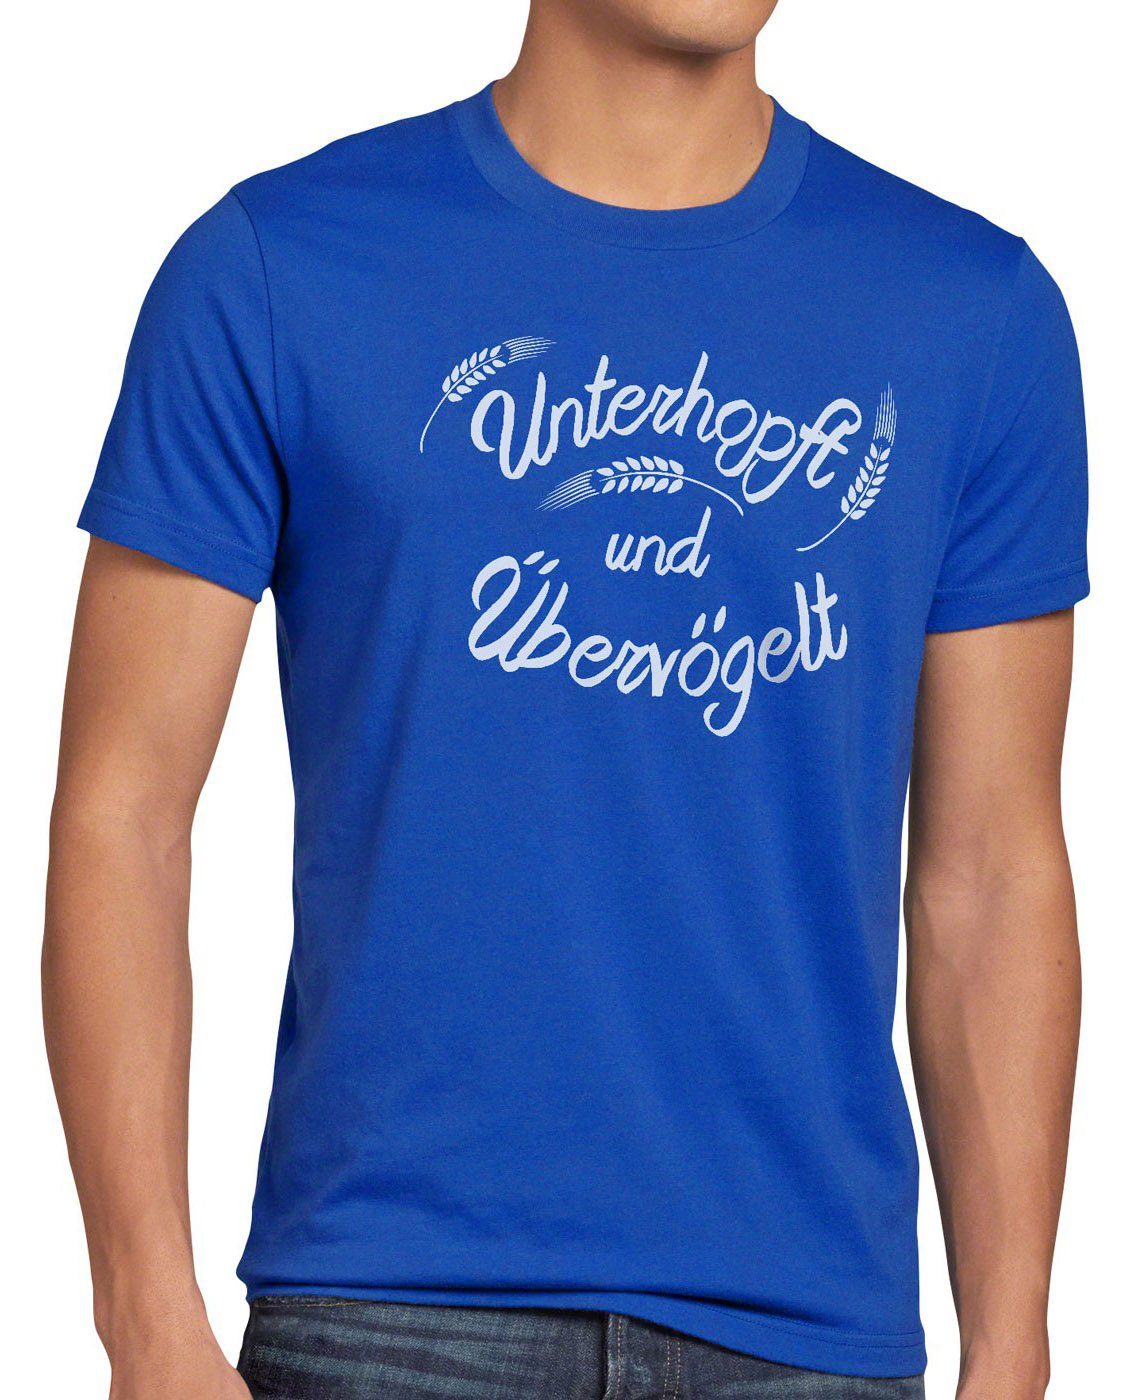 Funshirt Spruch Print-Shirt T-Shirt Bier Übervögelt blau Kult style3 Unterhopft Shirt Malz Herren Fun